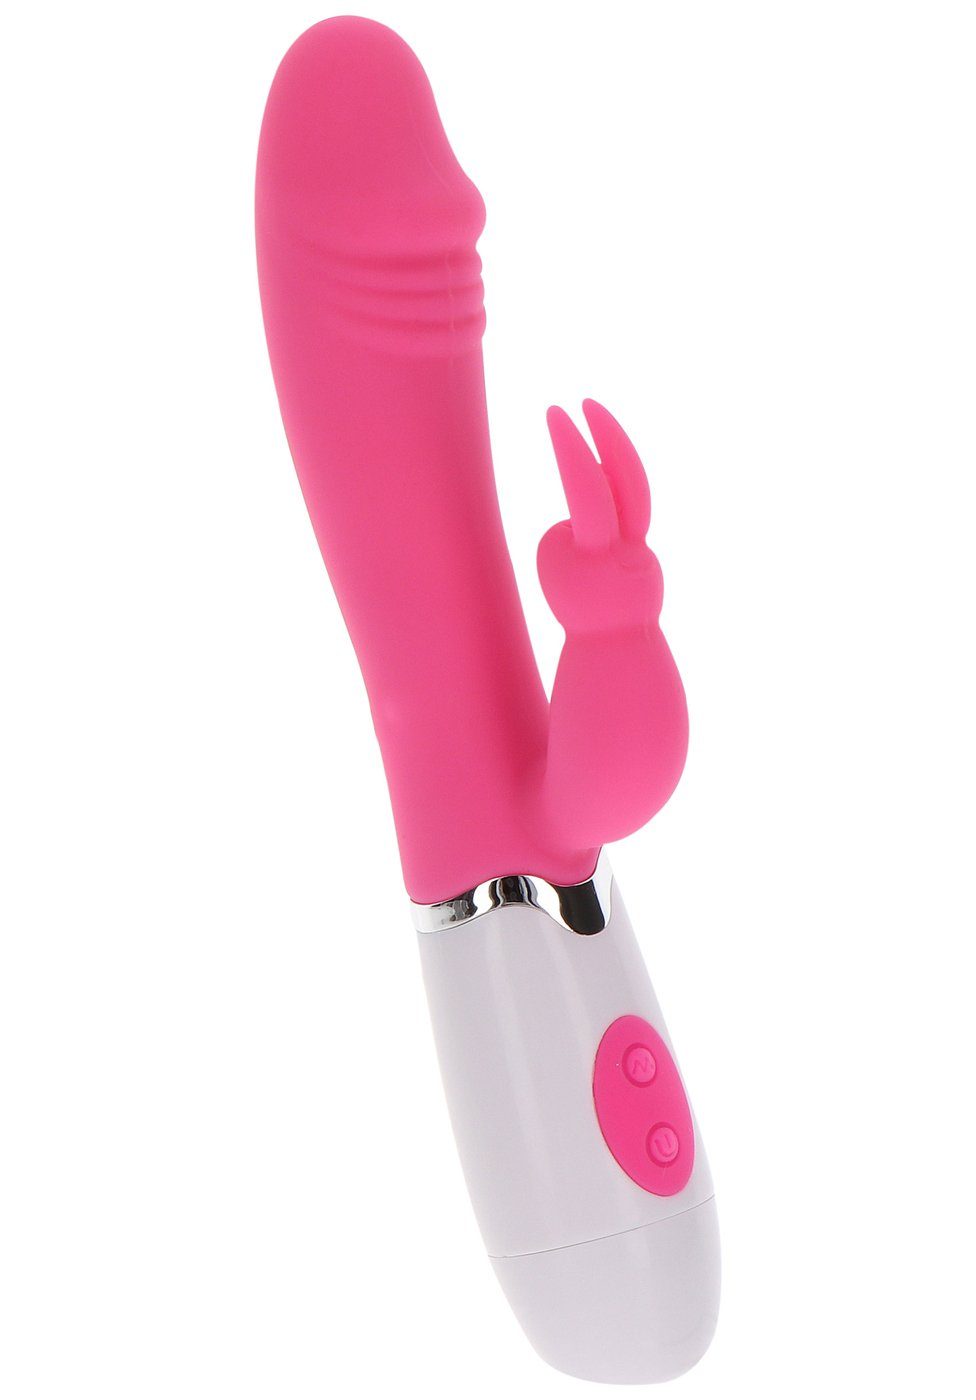 Vibrator pink Funky Rabbit TOYJOY - Rabbit-Vibrator